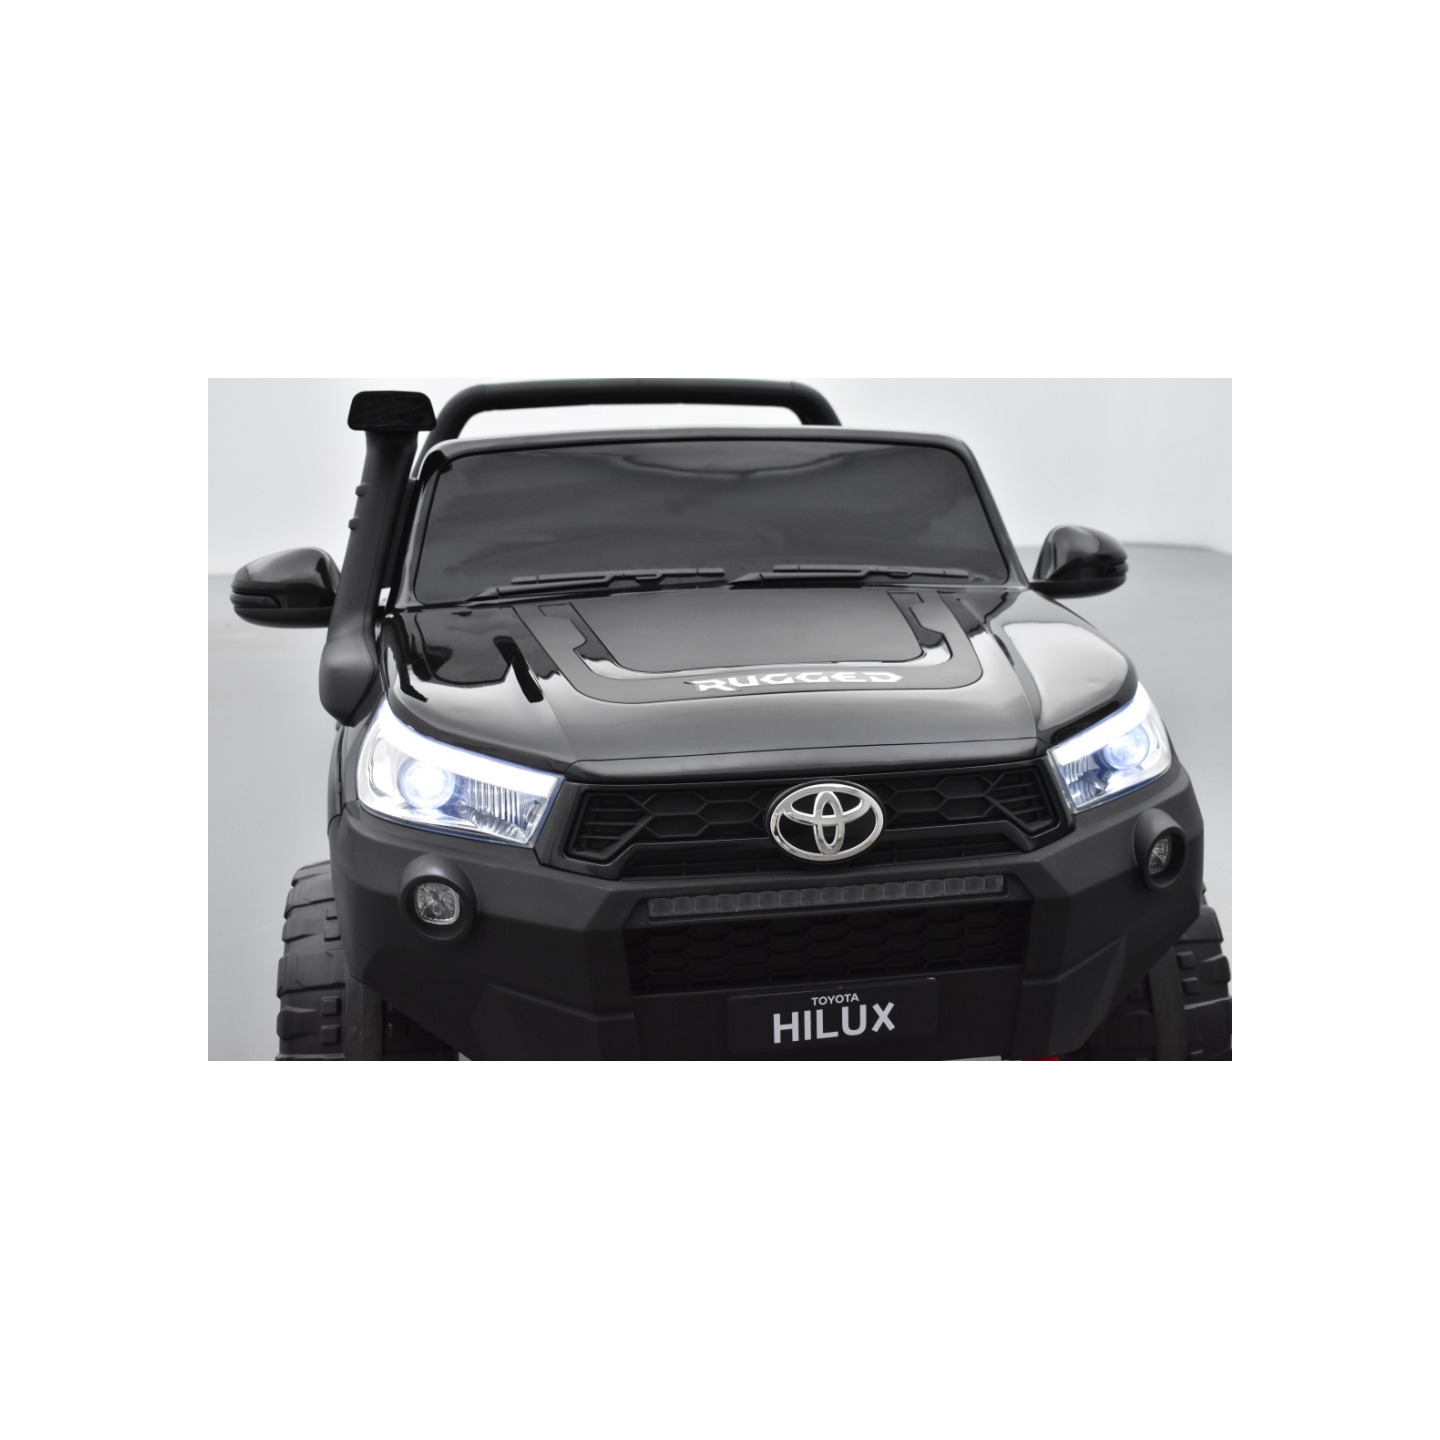 Toyota Hilux noir 24 Volts électrique pour enfant écran mp4, 4x4 électrique enfant 2 places